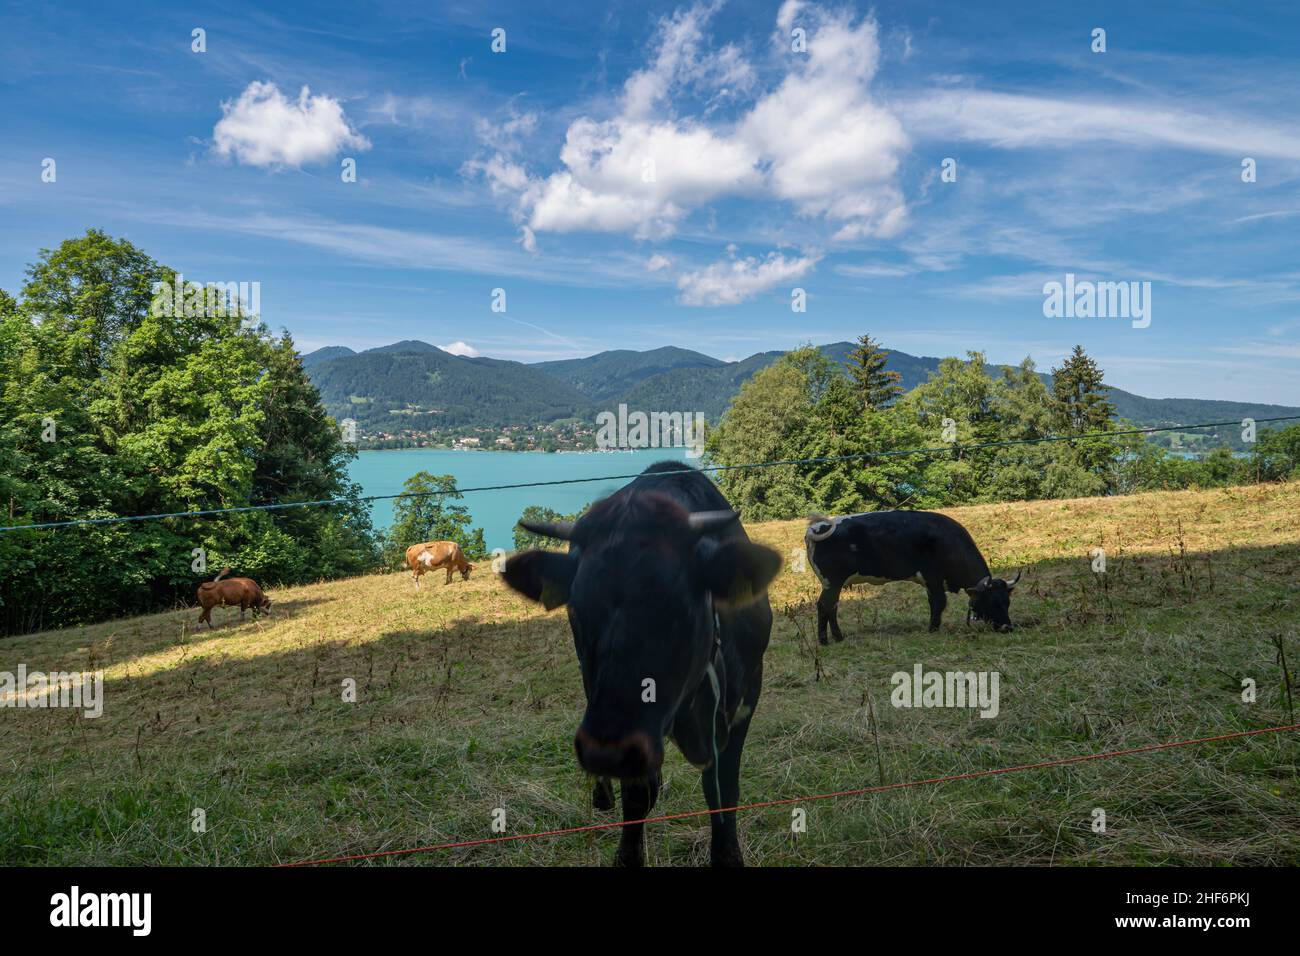 Wunderschöner ländlicher Blick am beliebten bayerischen Tegernsee mit einer Kuh im Vordergrund - Konzept für bäuerliche Relexation und gesunden Urlaub Stockfoto